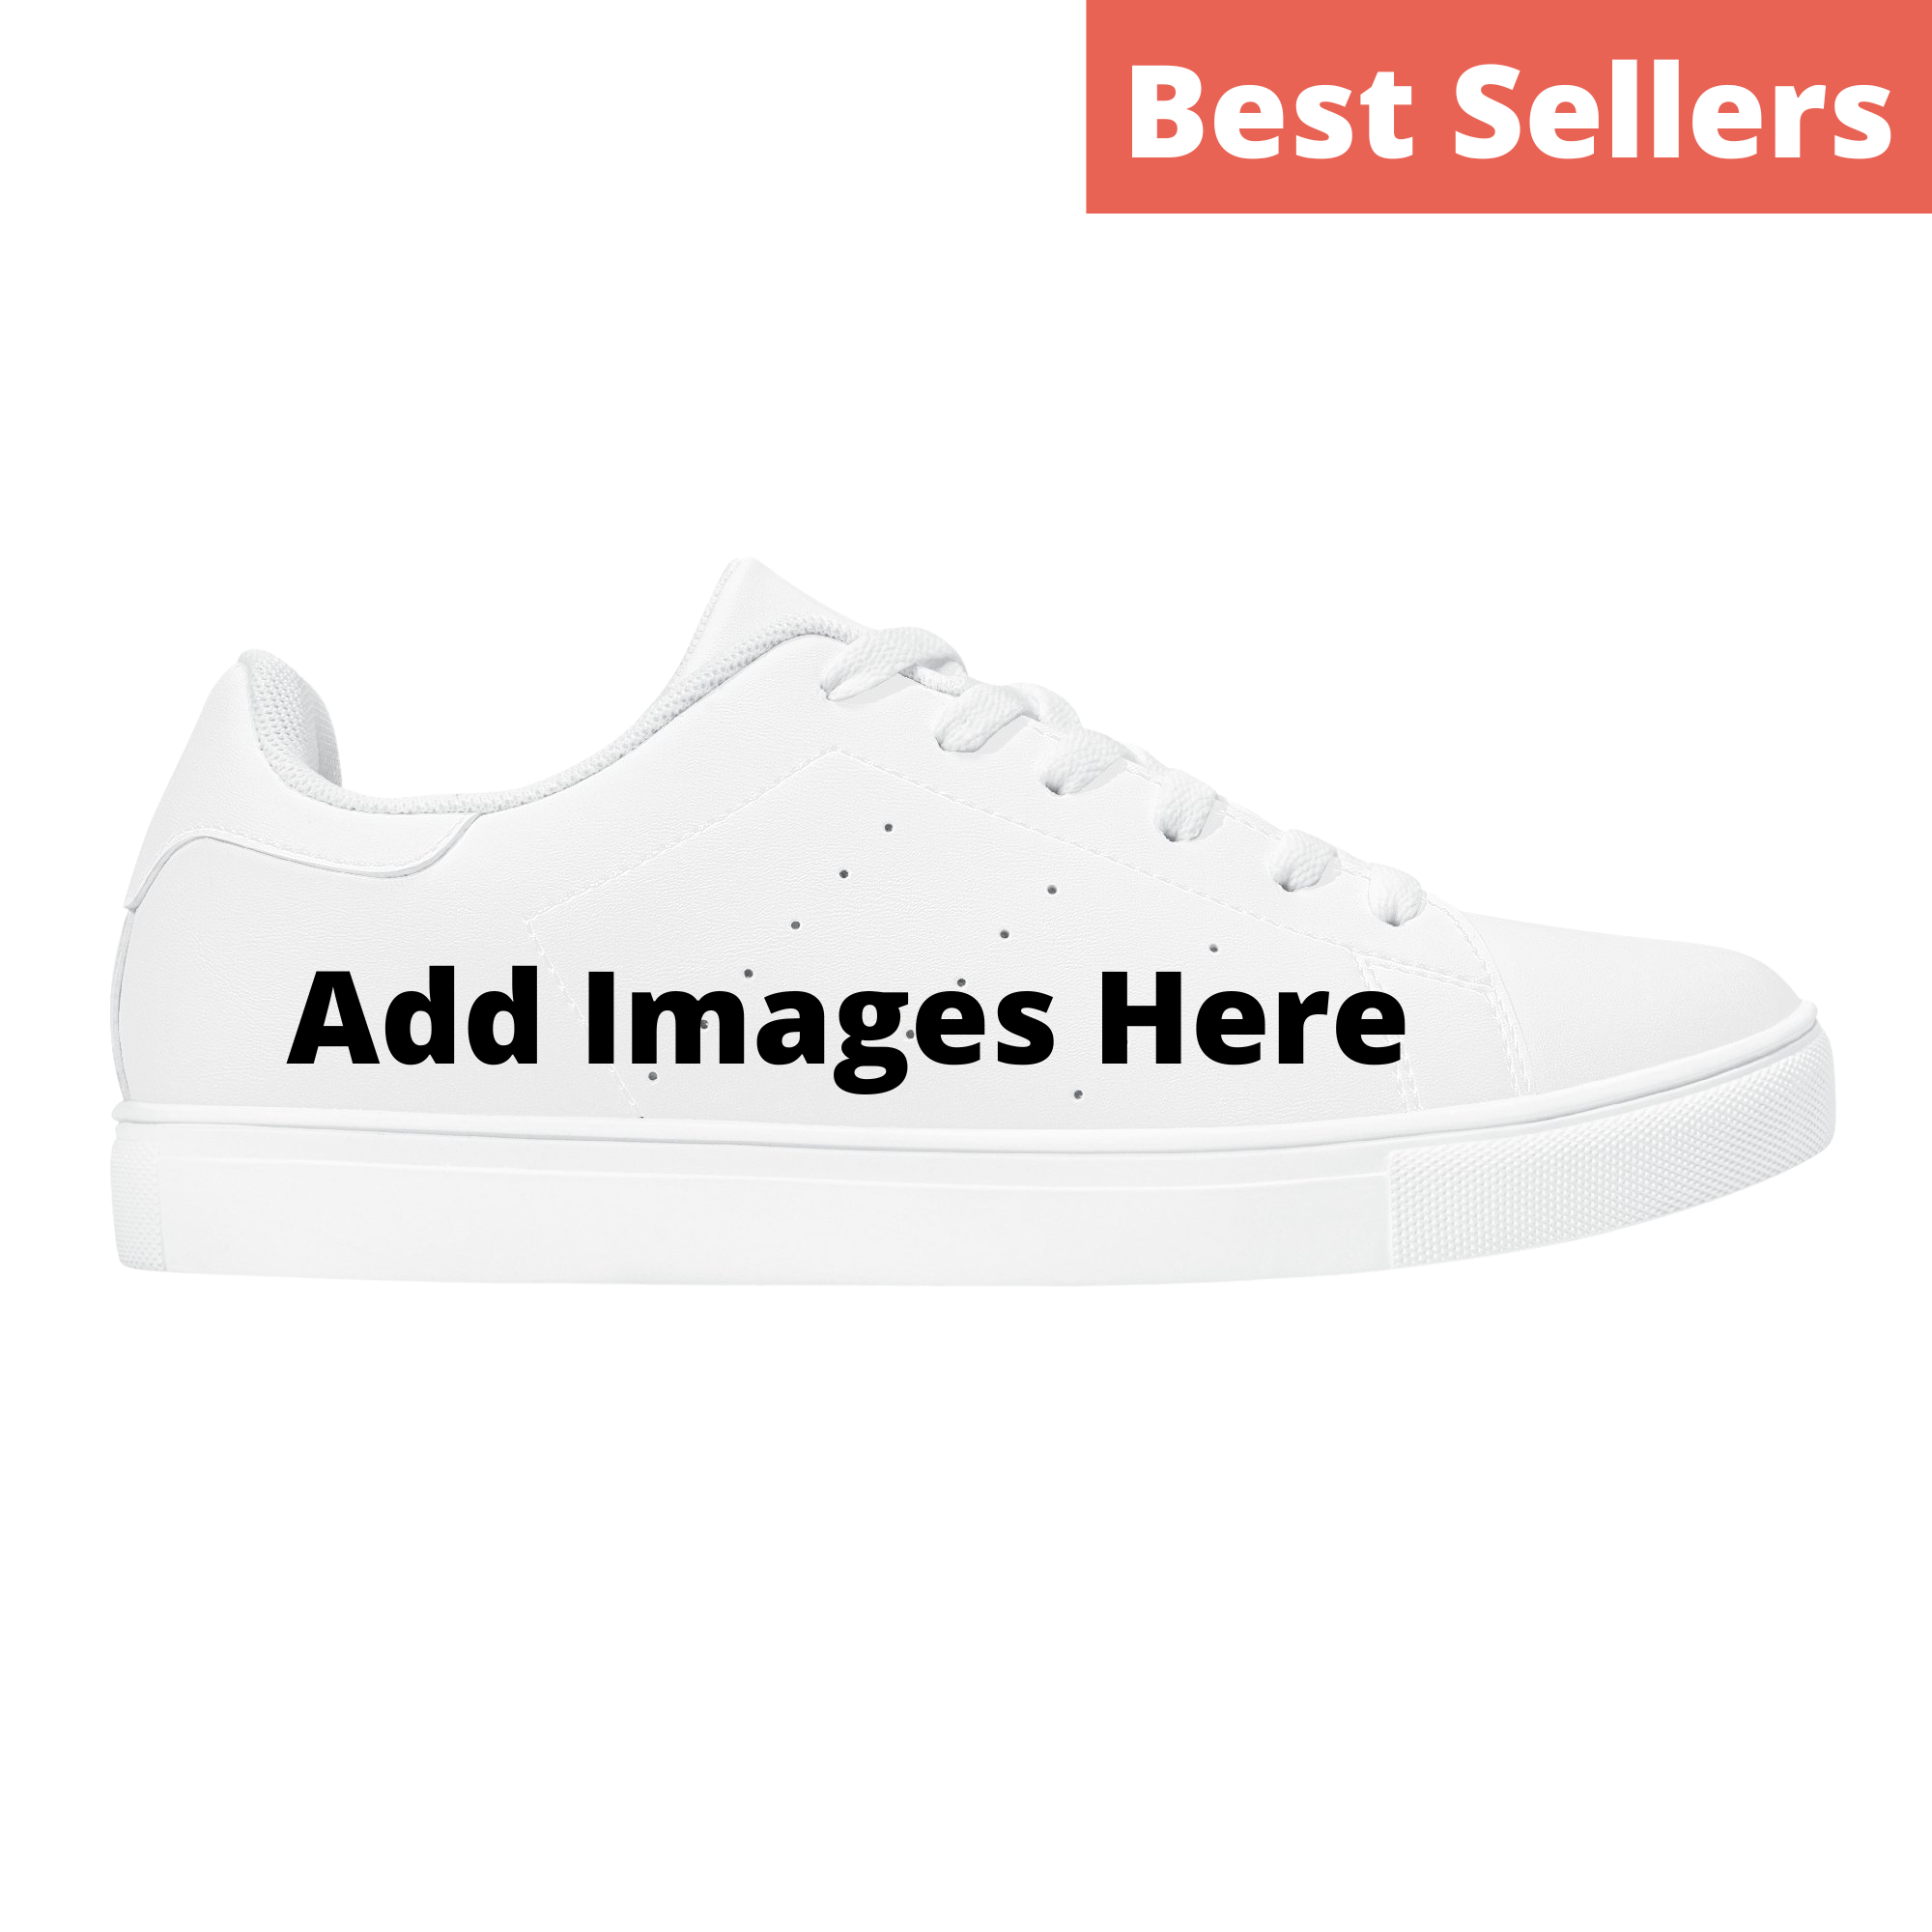 Best Sellers - Shoe Zero